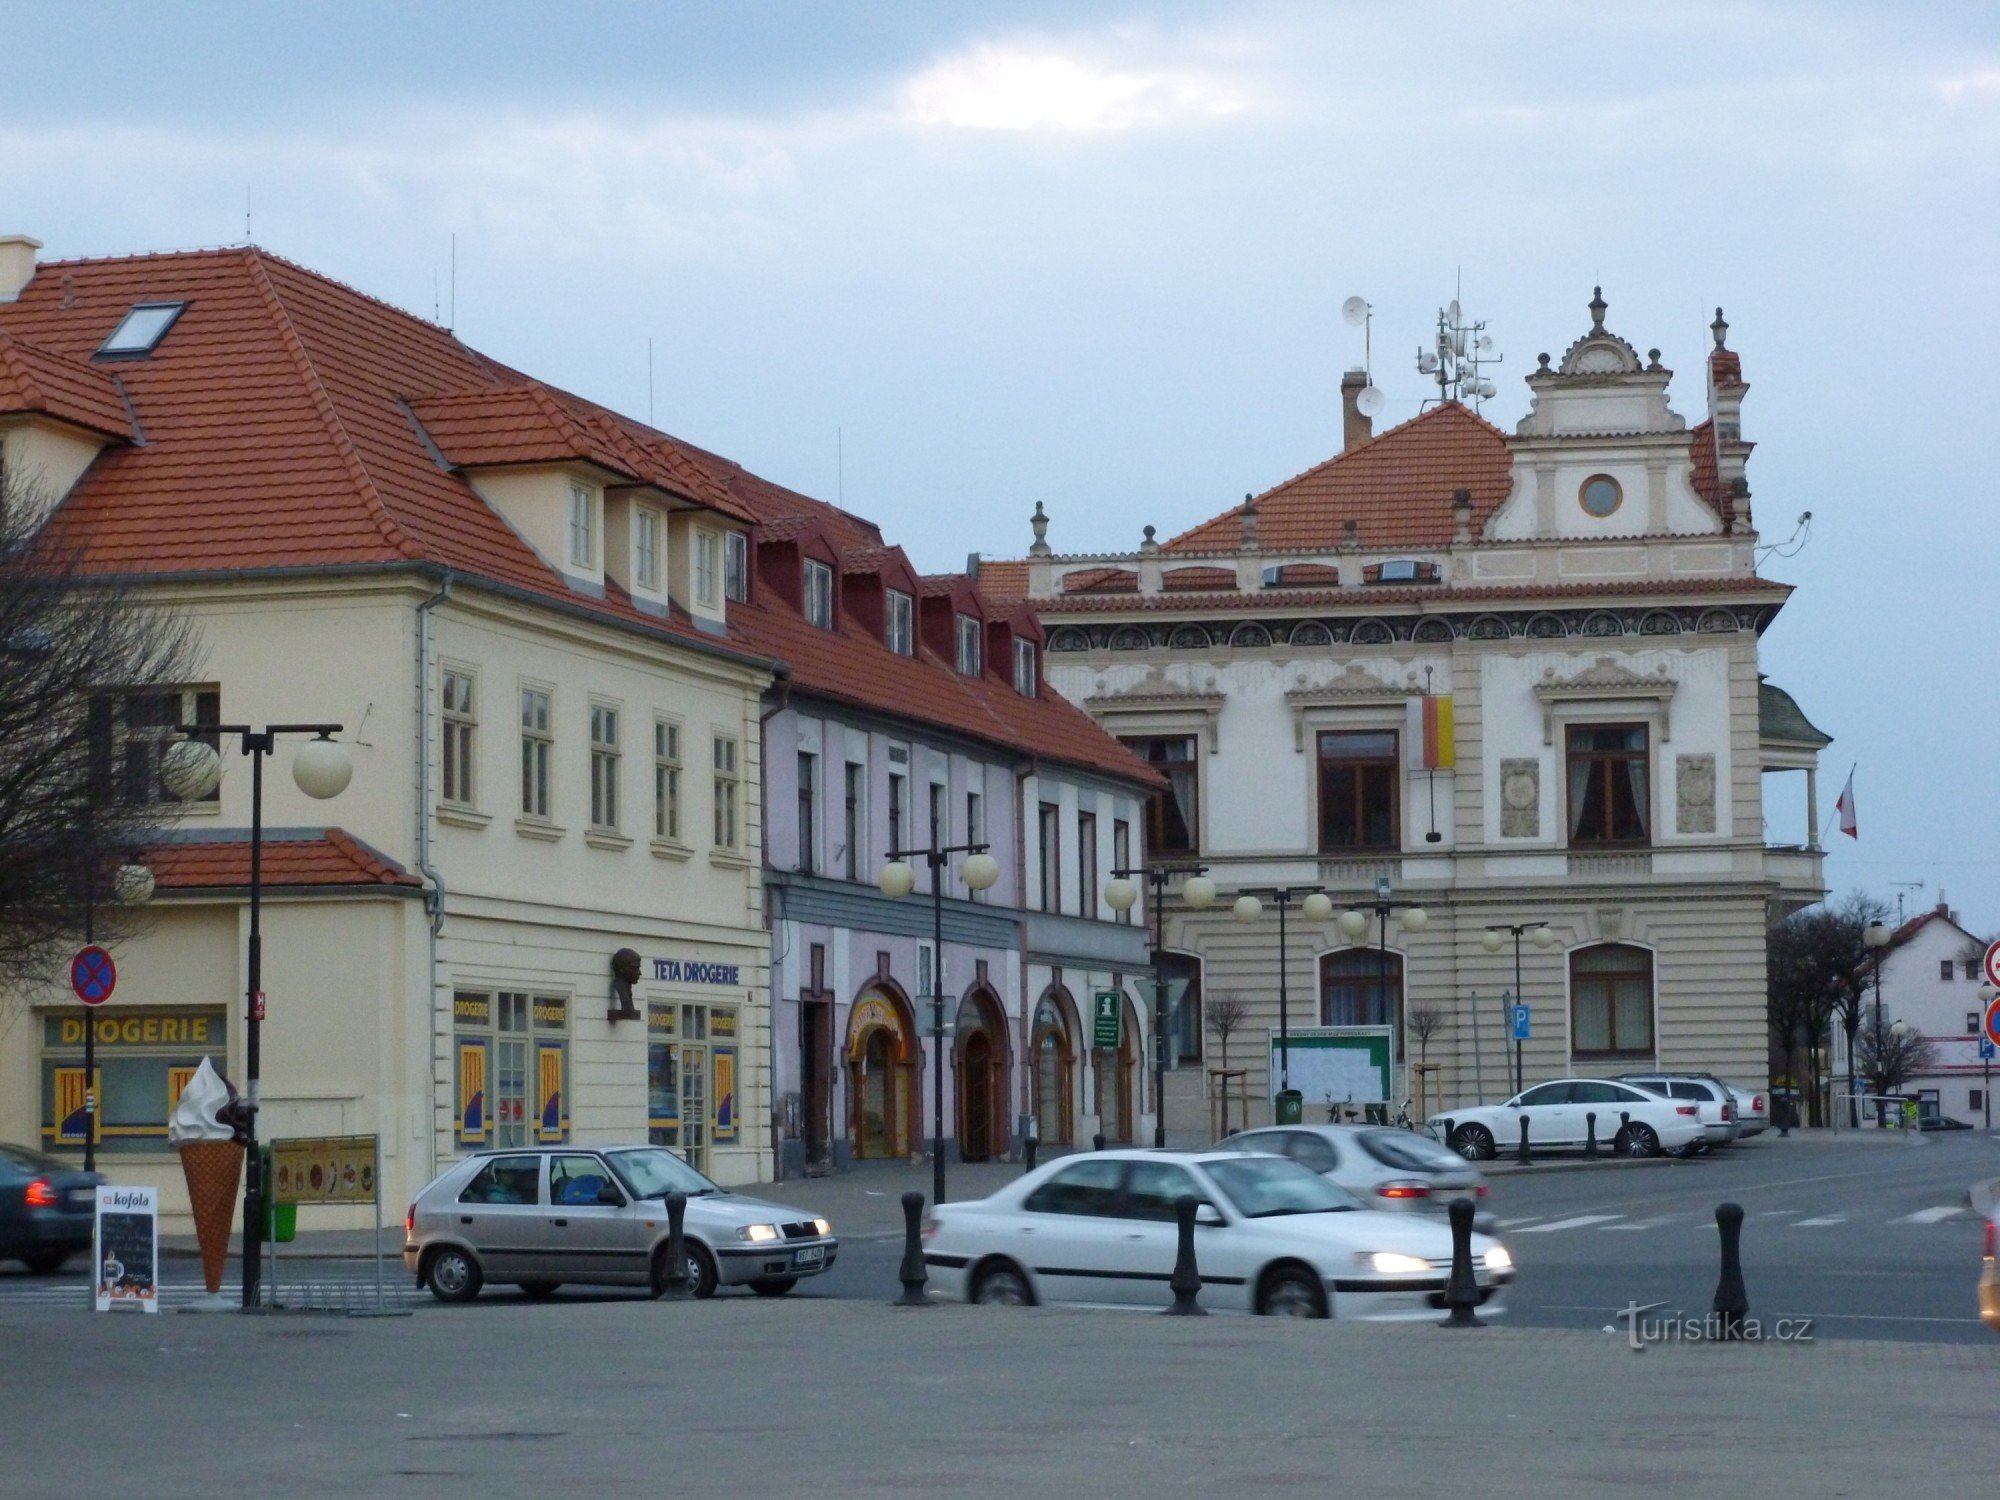 Podebrady - Jiřího náměstí információs központtal